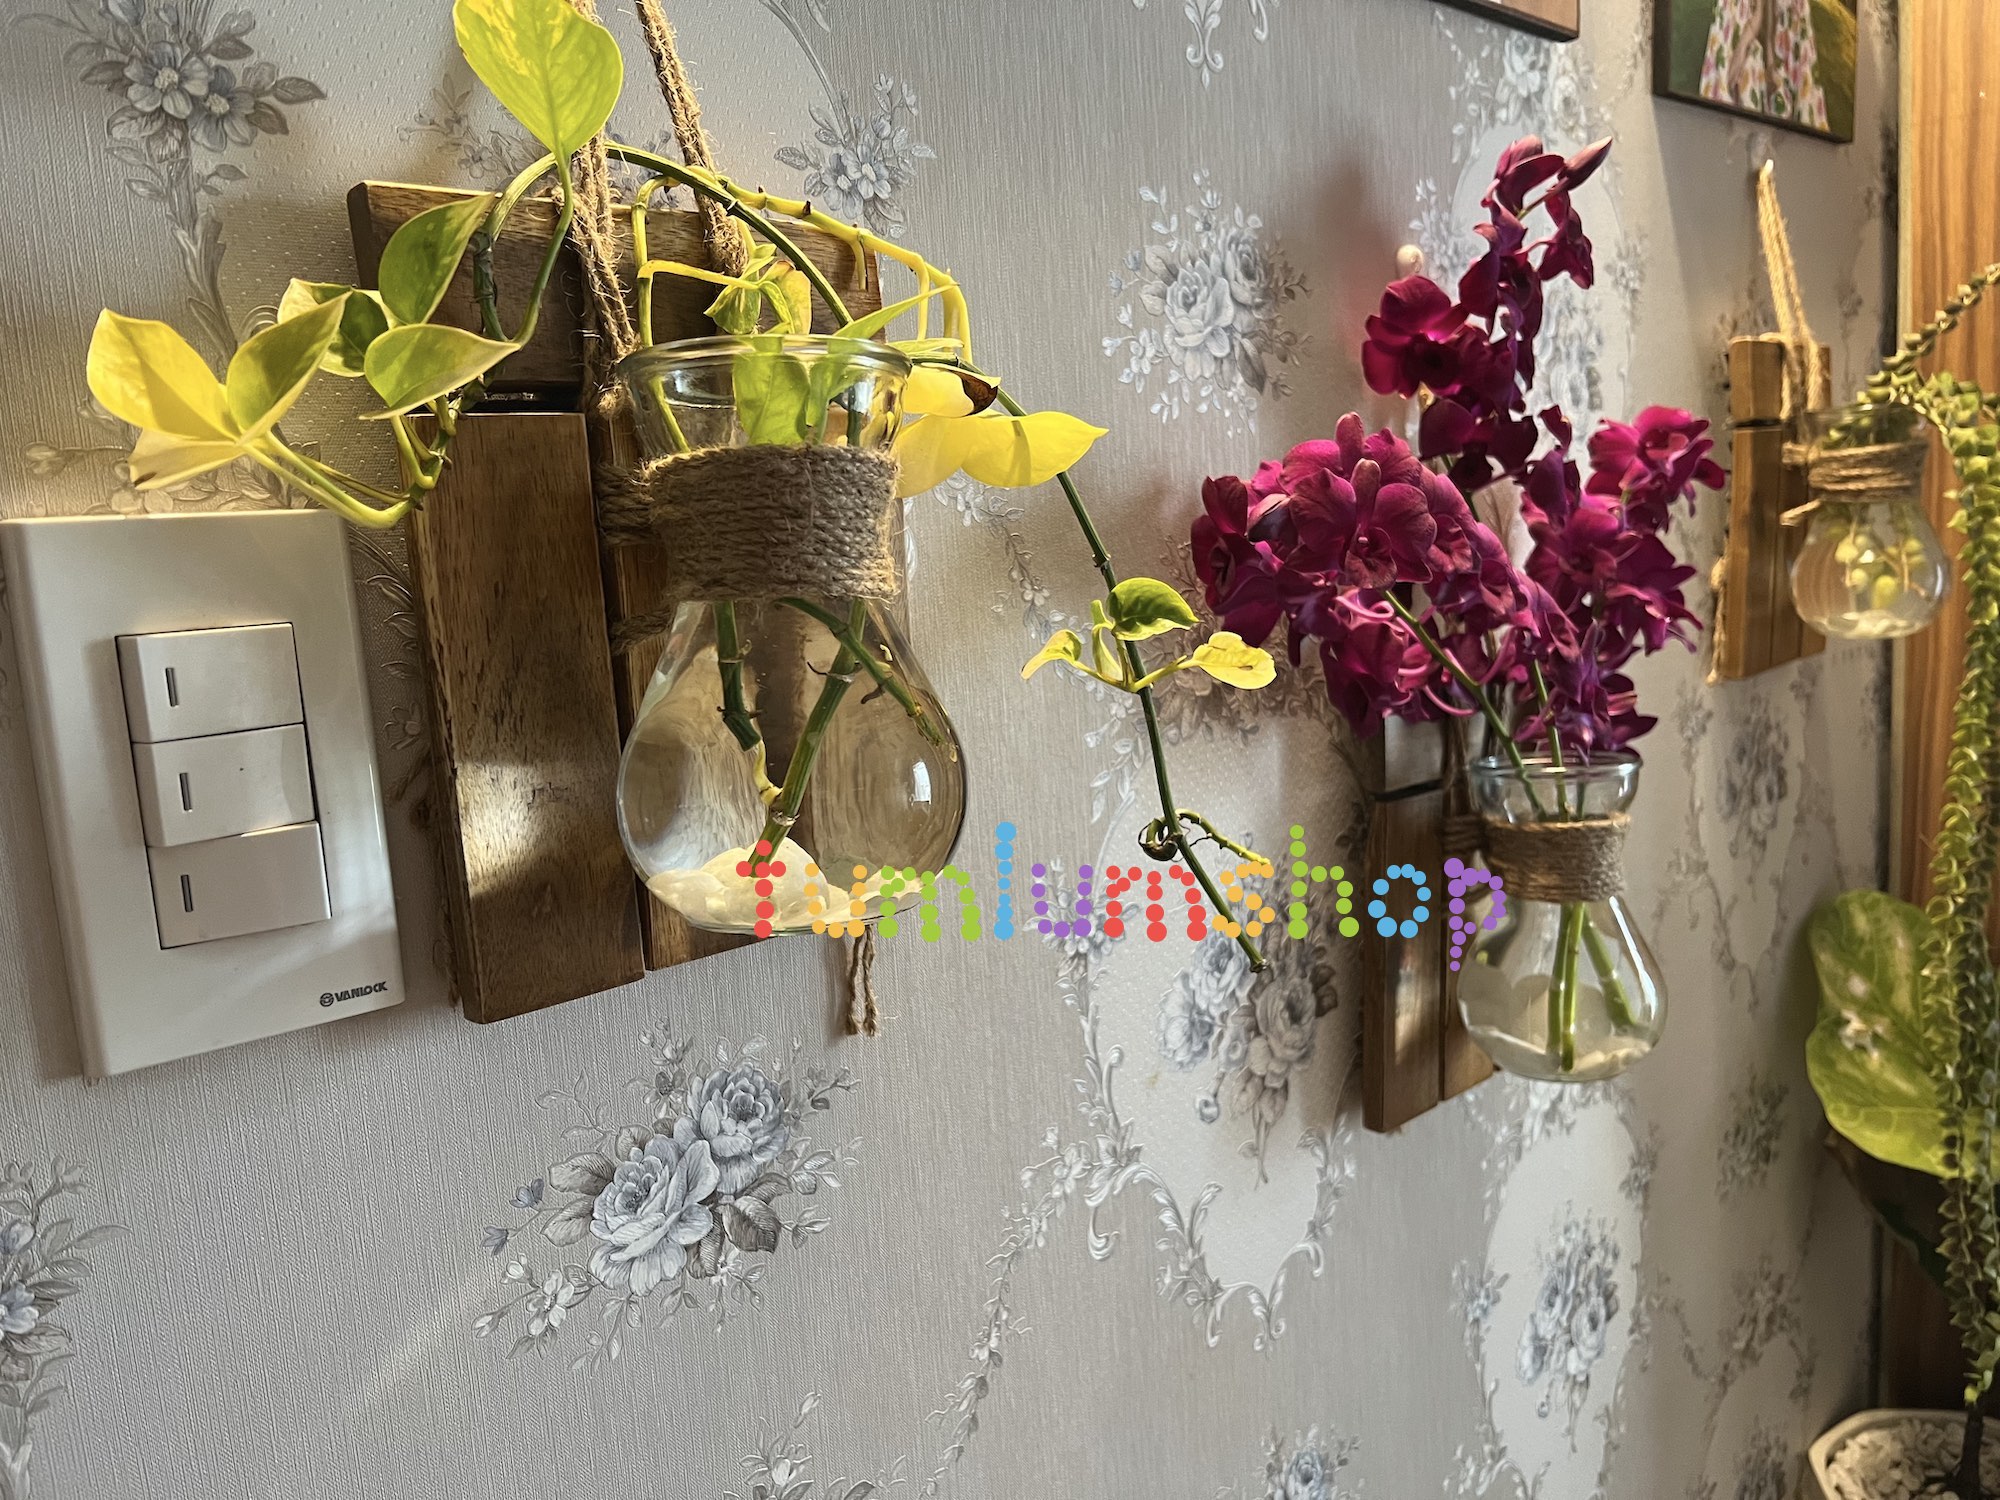 Lọ hoa thuỷ tinh kèm bảng gỗ decor trang trí nhà cửa